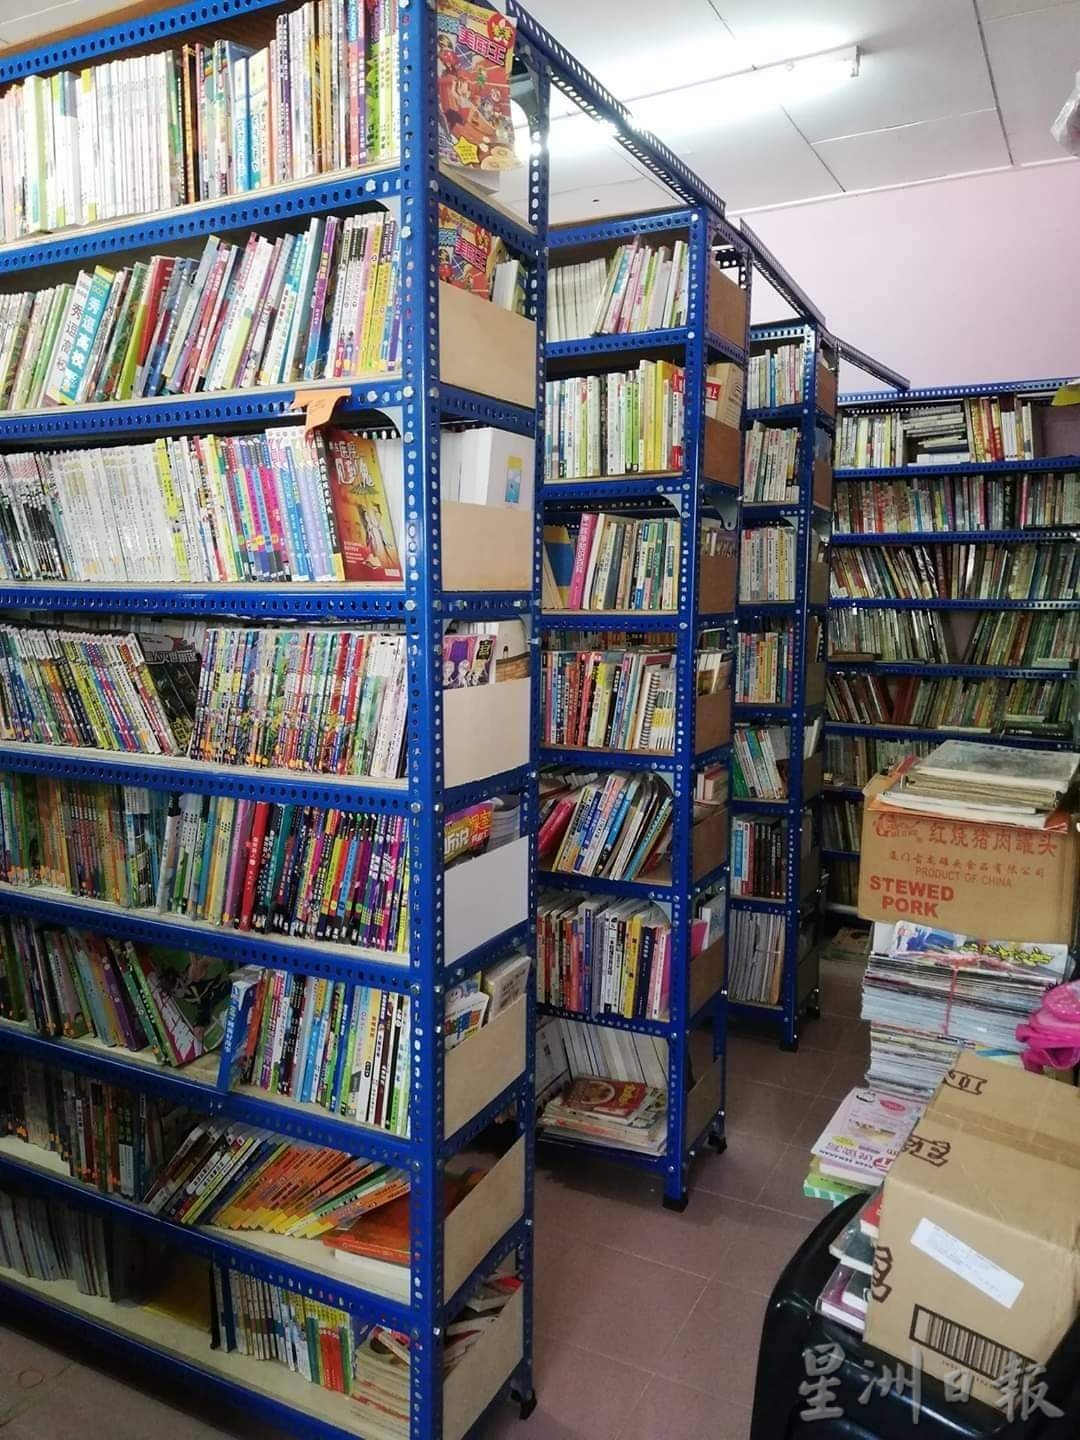 （大北马）天竹坊二手书店提供社区一个方便租借各种书籍提升阅读风气